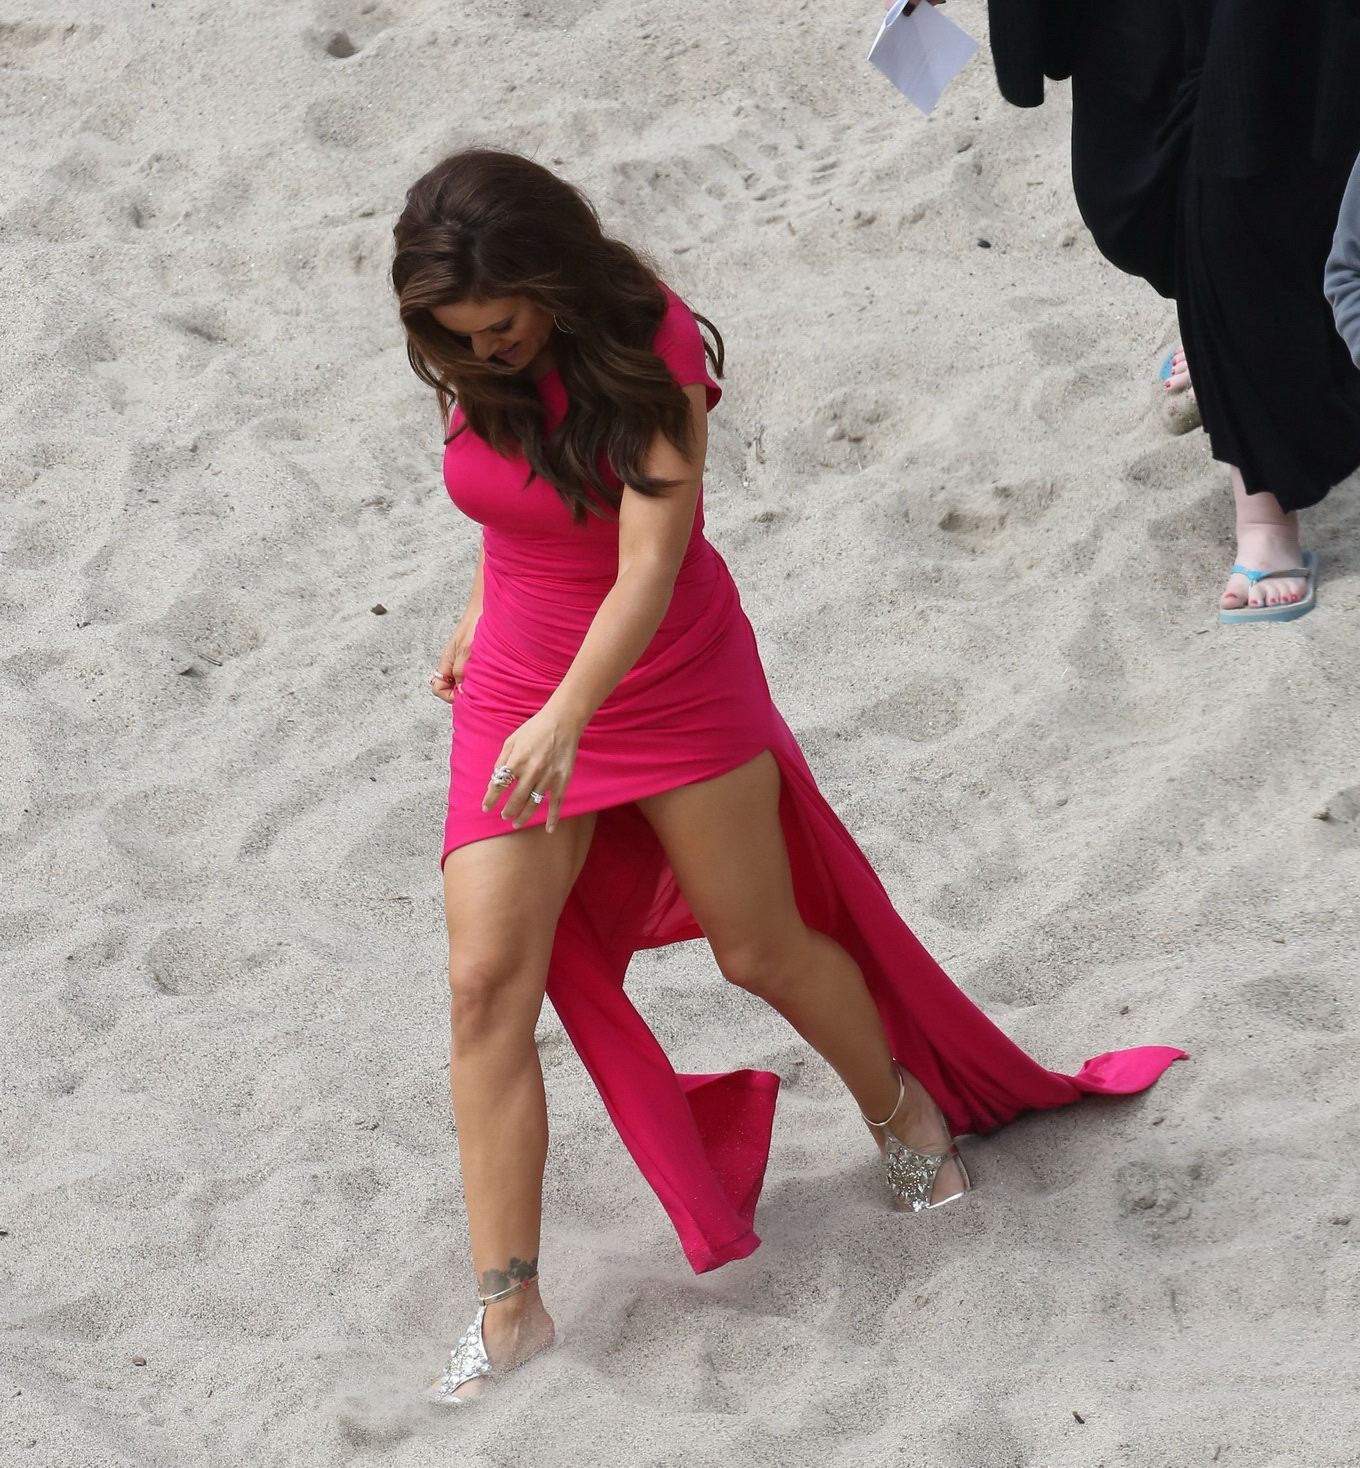 Alyssa Milano portant une robe rose courte et moulante sur le tournage d'un film à la plage.
 #75236696